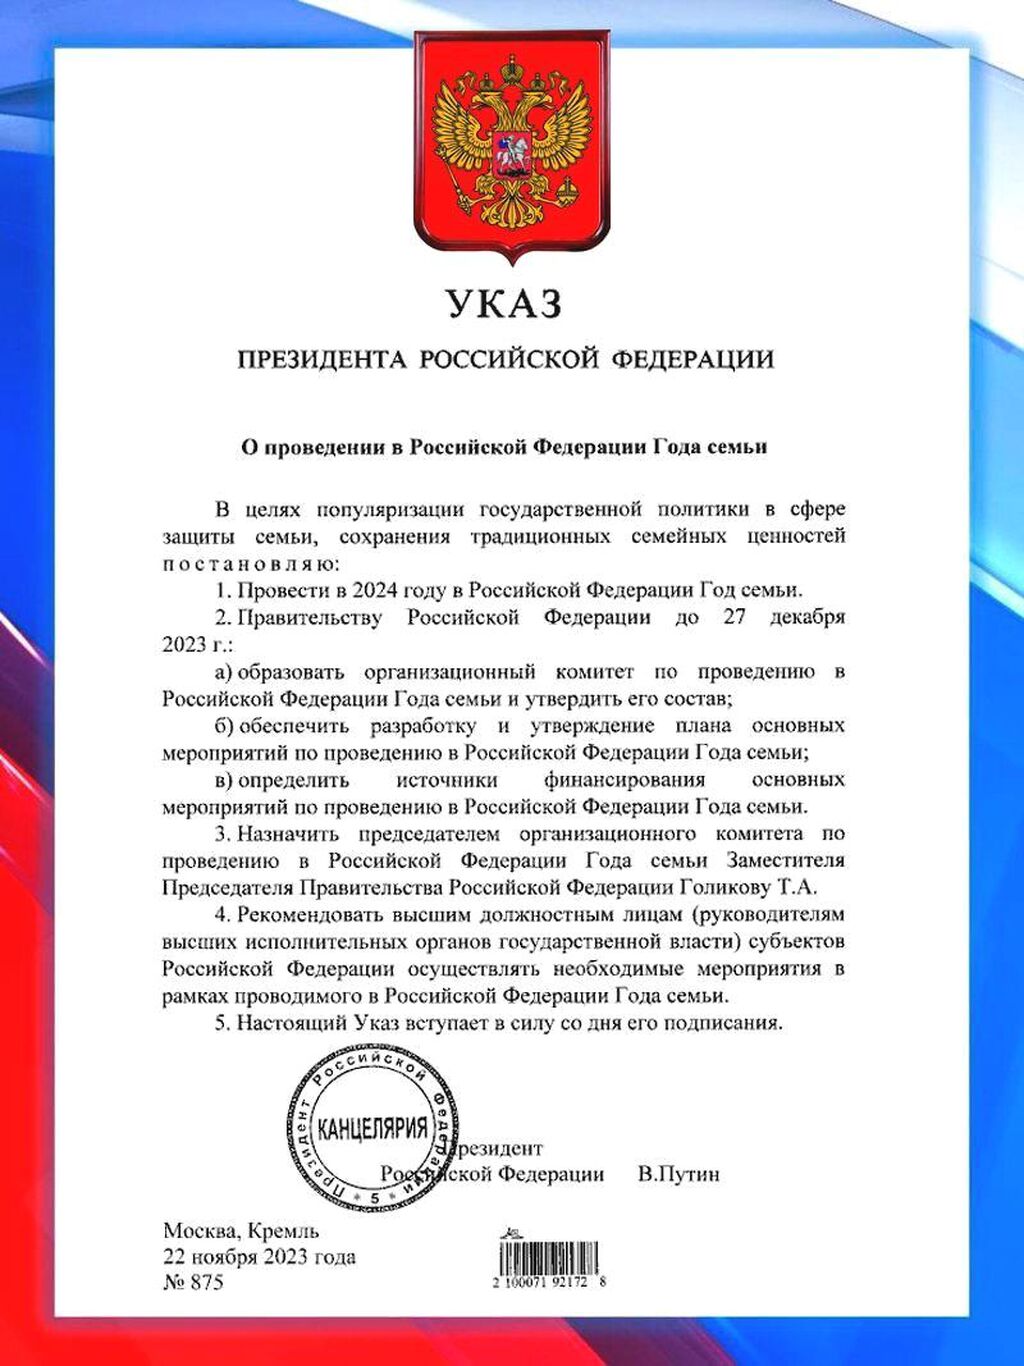 Указ Призедента Российской Федерации о проведении в Российской Федерации Года семьи